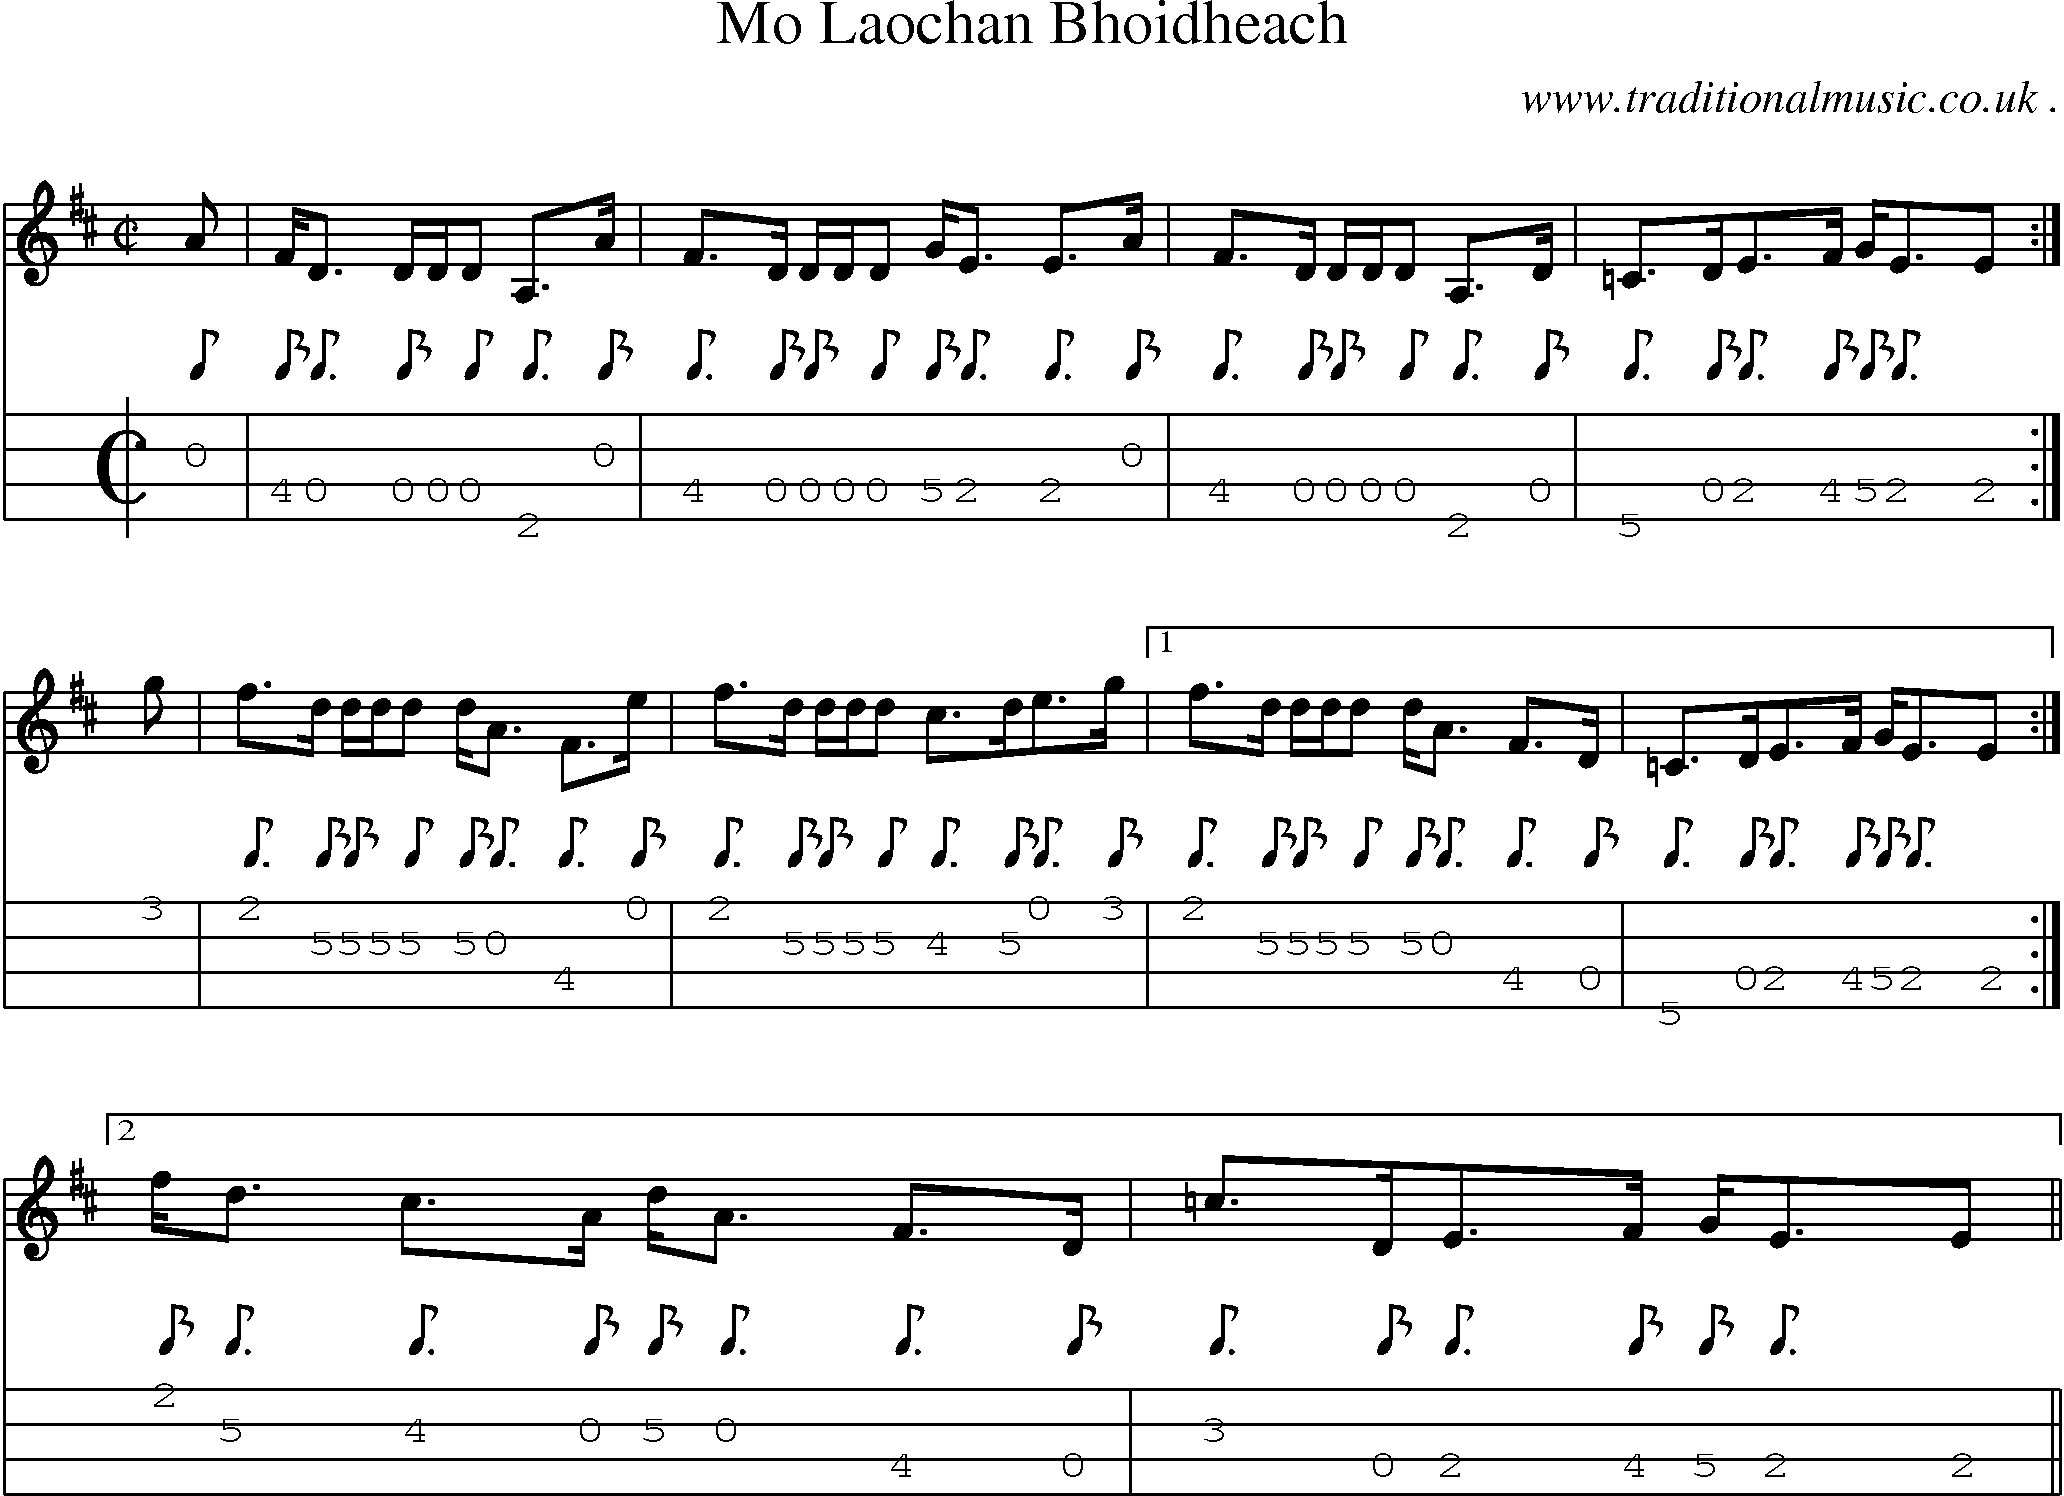 Sheet-music  score, Chords and Mandolin Tabs for Mo Laochan Bhoidheach